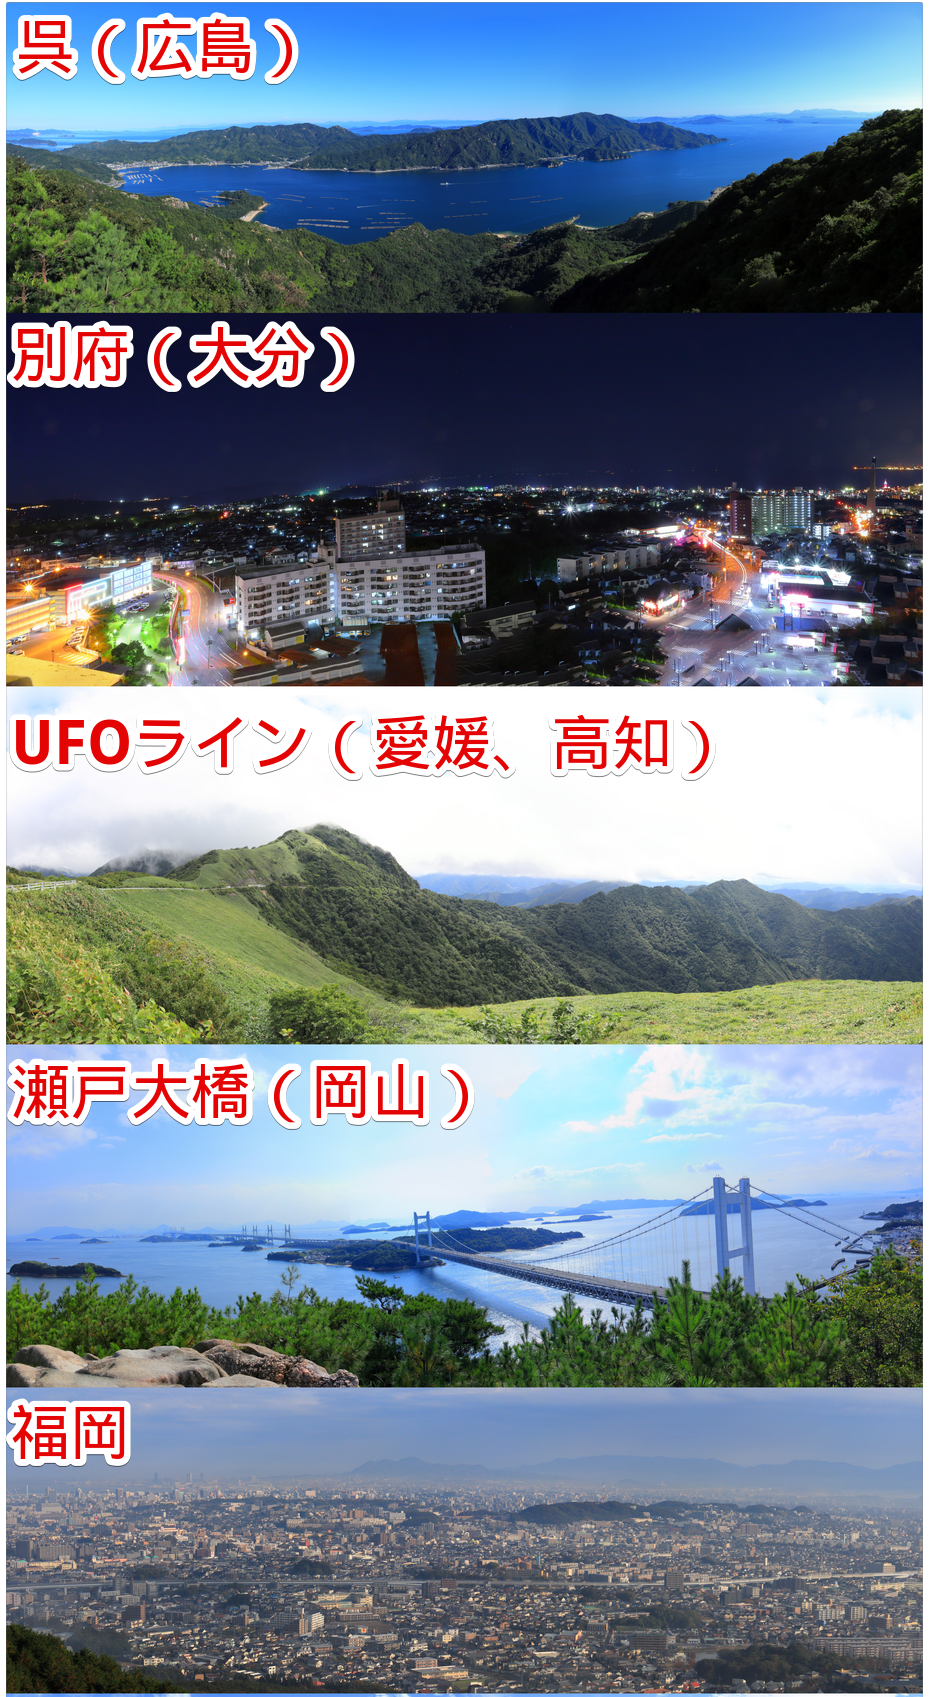 ナポリタン寿司が実際に訪問して撮影したパノラマ写真（上から呉、別府、UFOライン、瀬戸大橋、福岡）